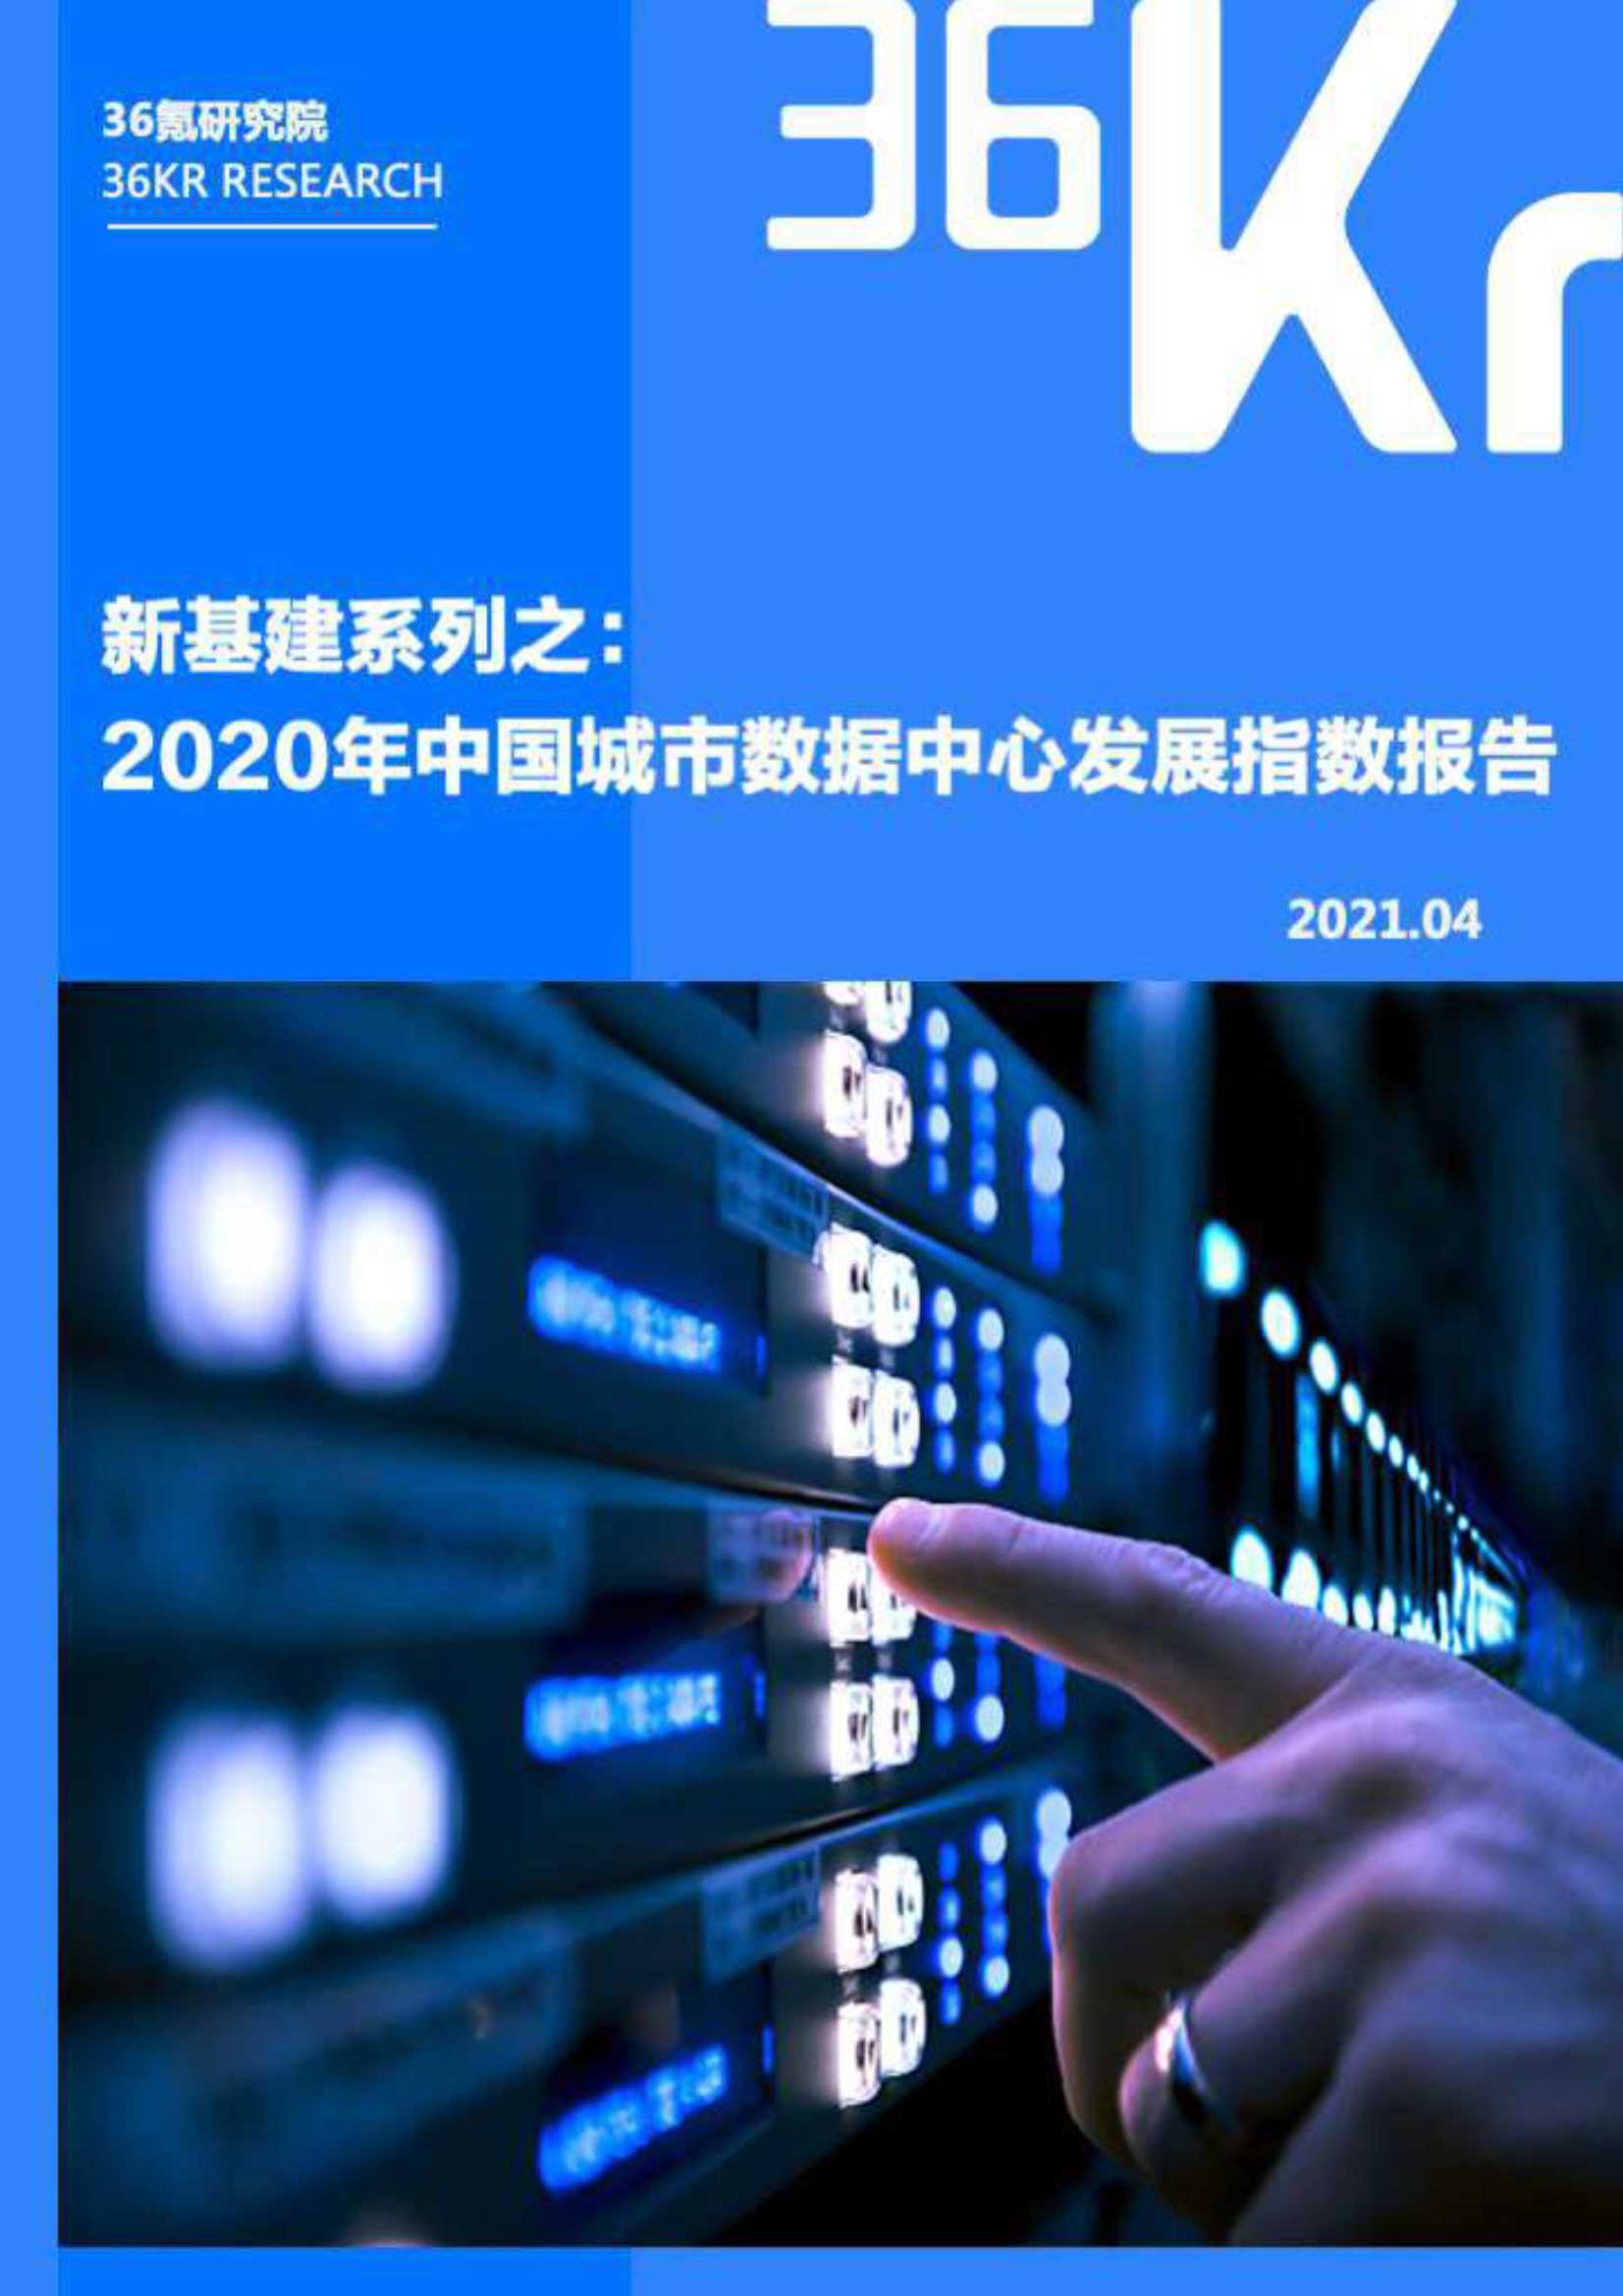 36Kr-新基建系列之2020年中国城市数据中心发展指数报告-2021.05-45页